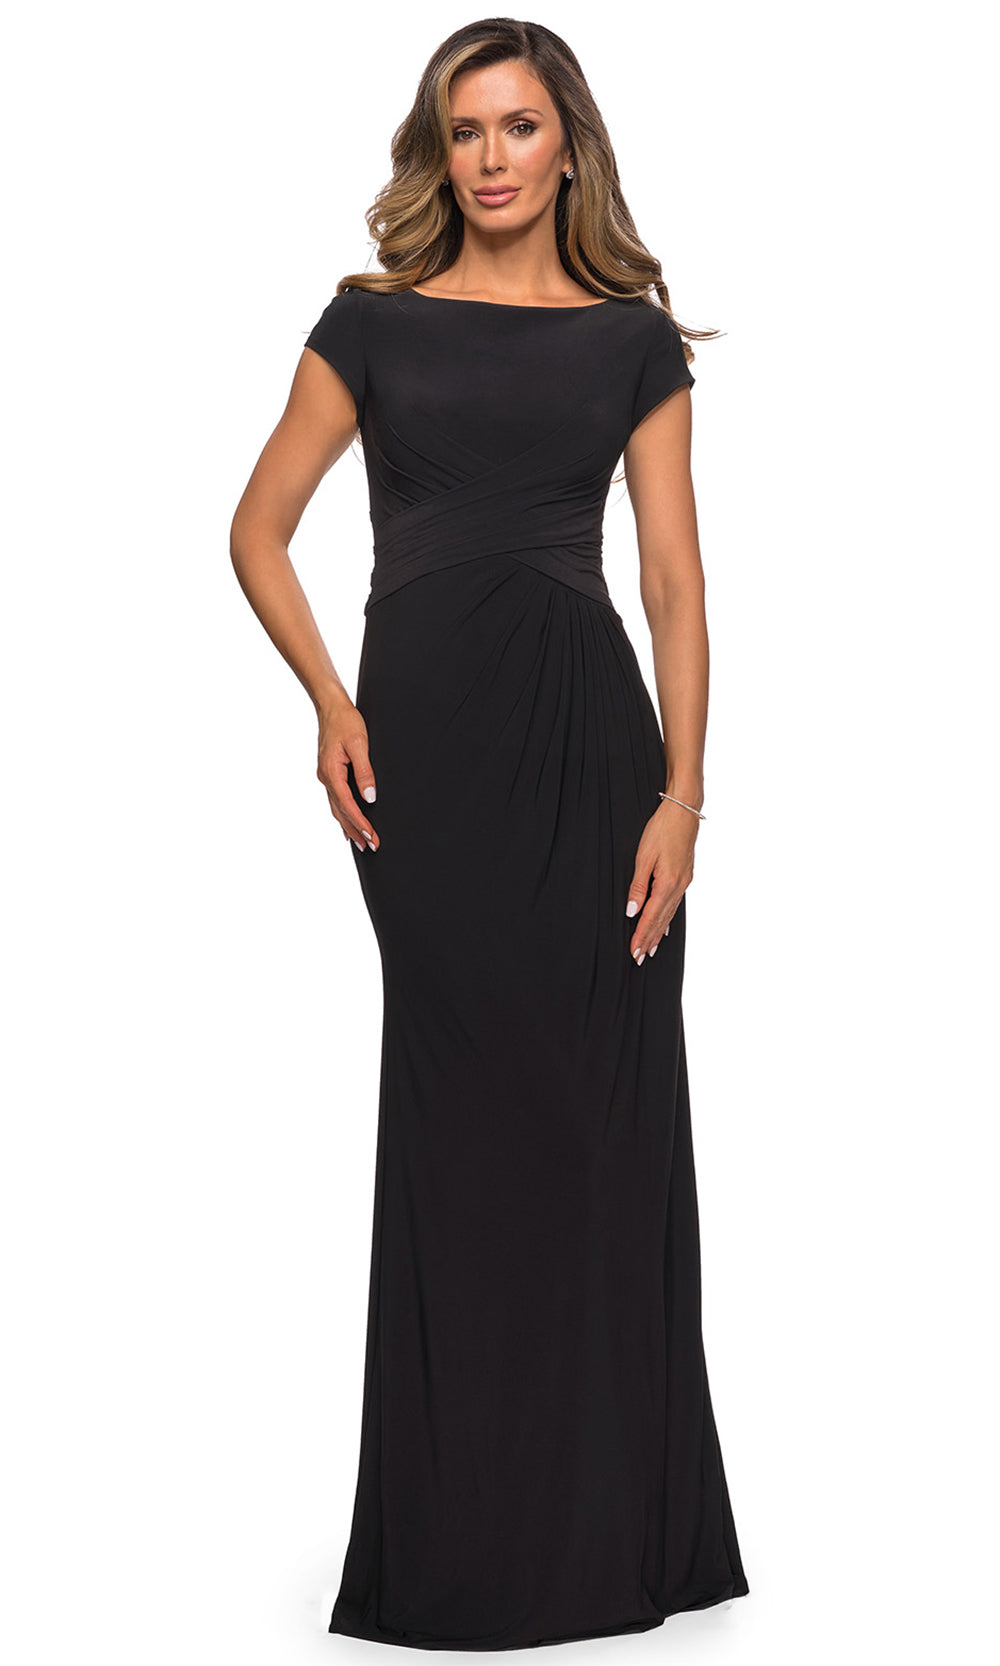 La Femme - 28026 Cap Sleeve Jersey Long Formal Dress In Black